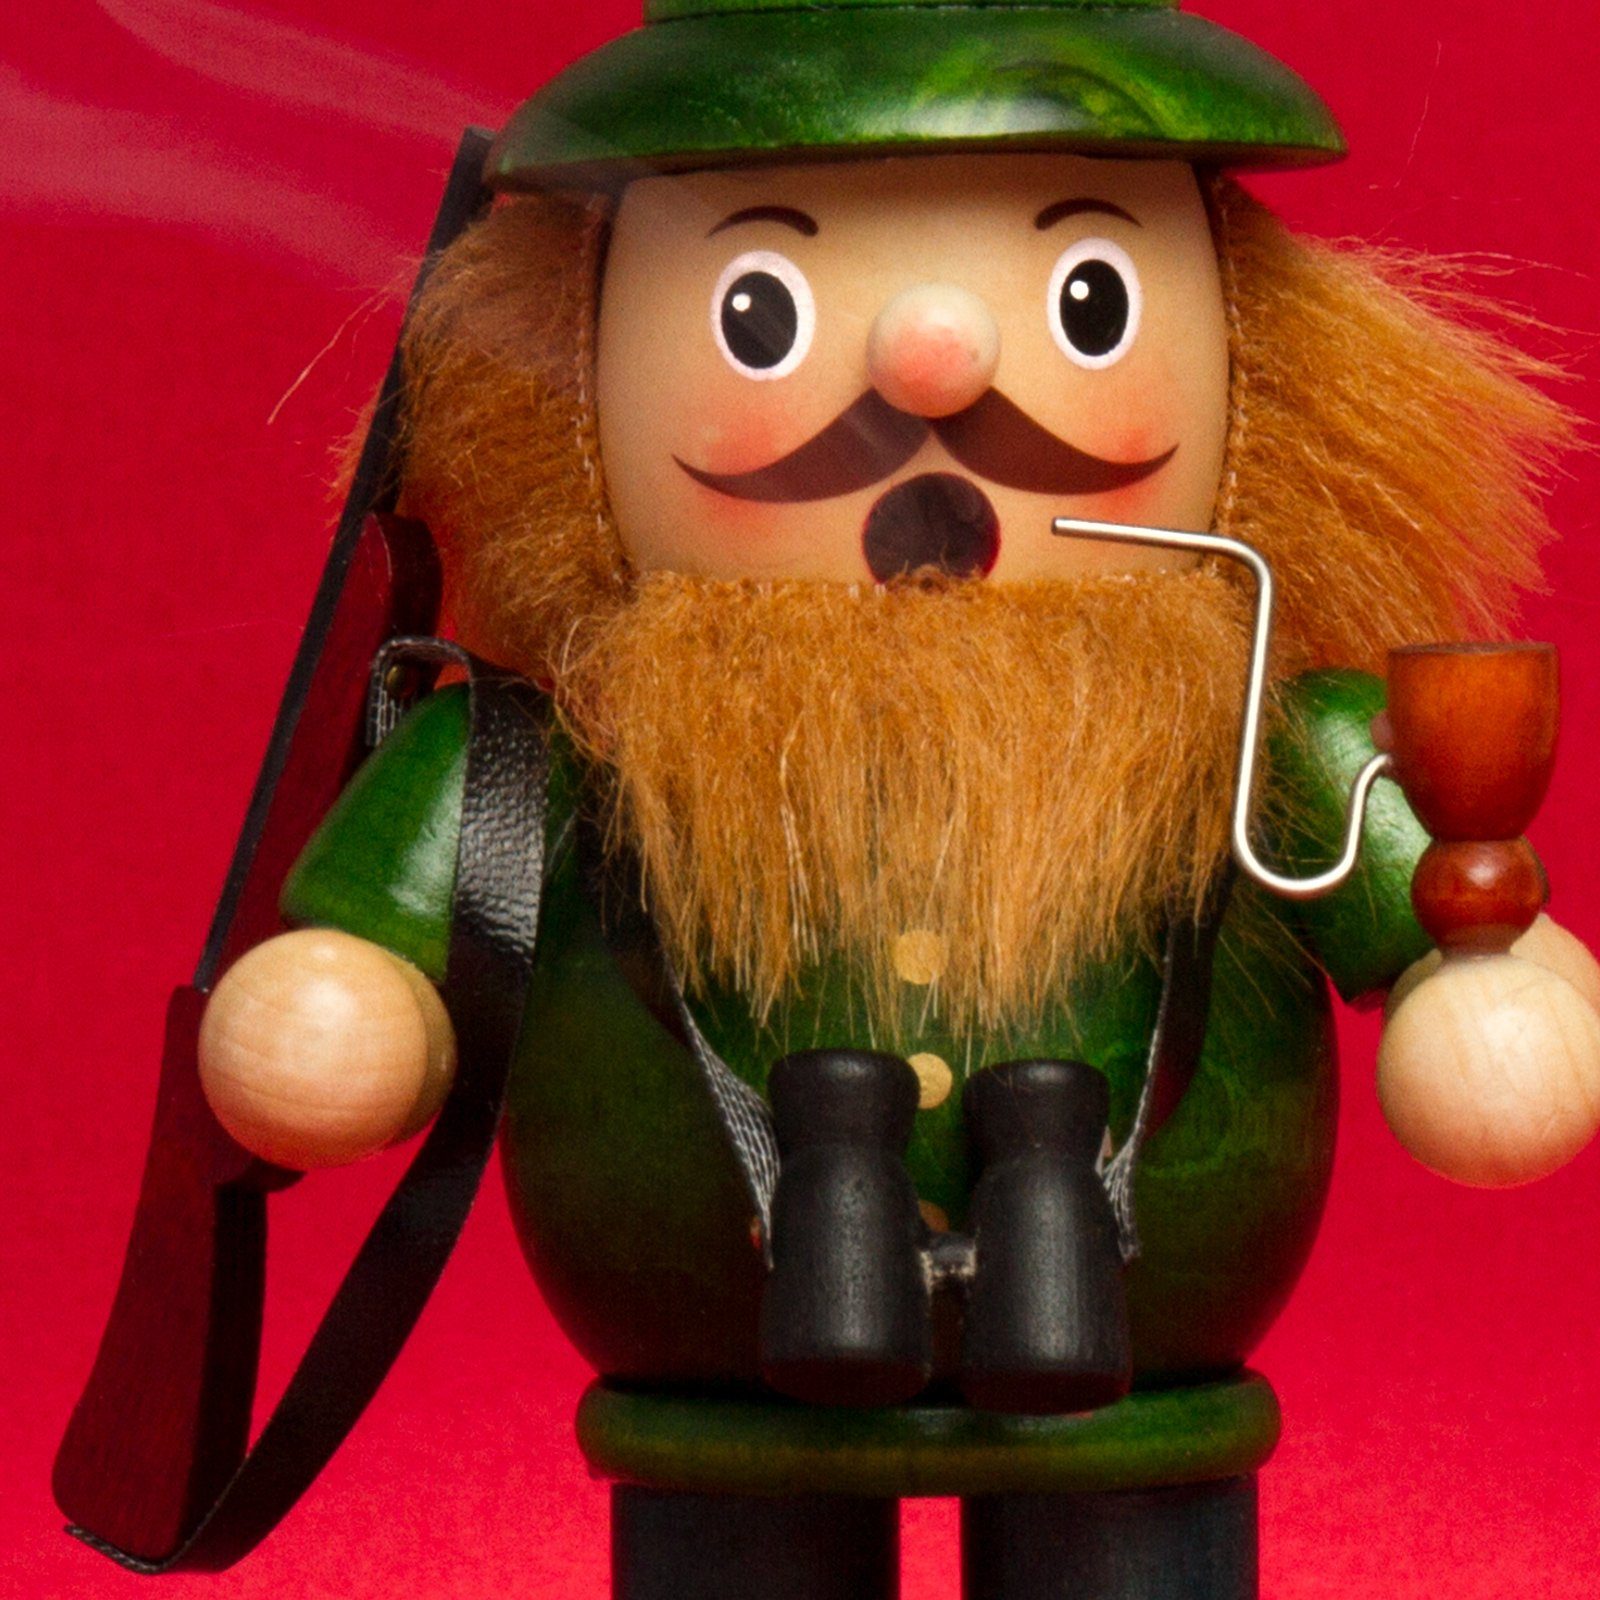 aus verschiedene B06 - RM-B Holz Jäger grün Räuchermännchen Motive SIKORA Weihnachtsfigur